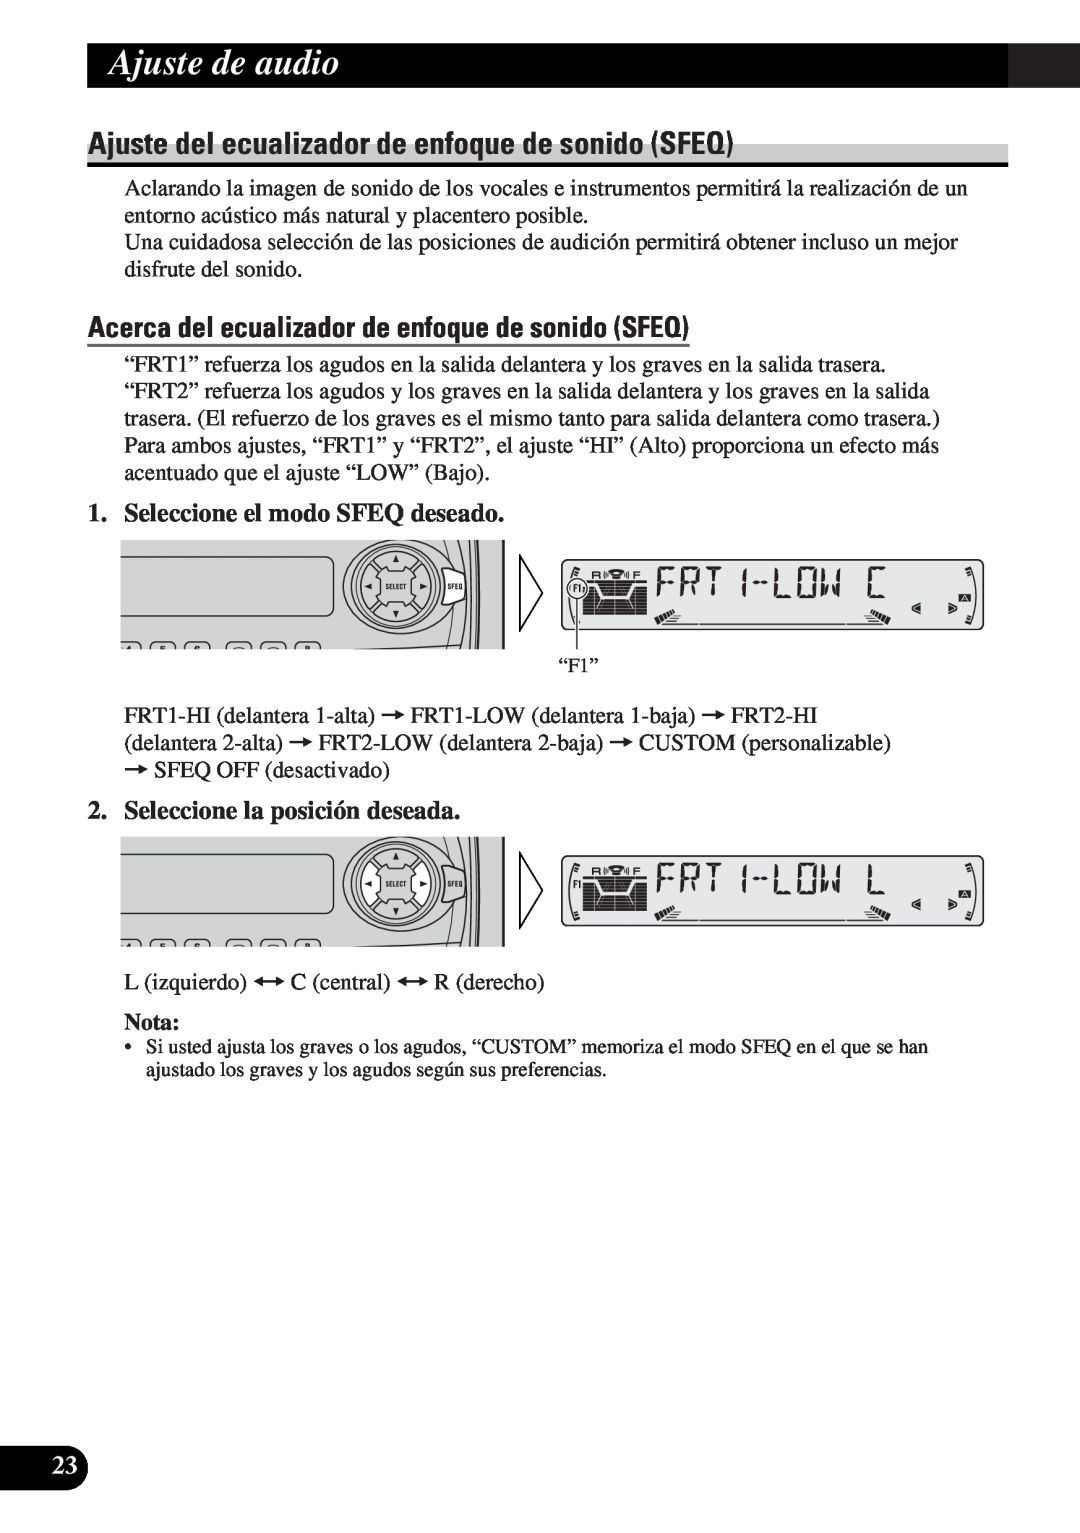 Pioneer DEH-3330R, DEH-3300R operation manual Ajuste de audio, Ajuste del ecualizador de enfoque de sonido SFEQ, Nota 